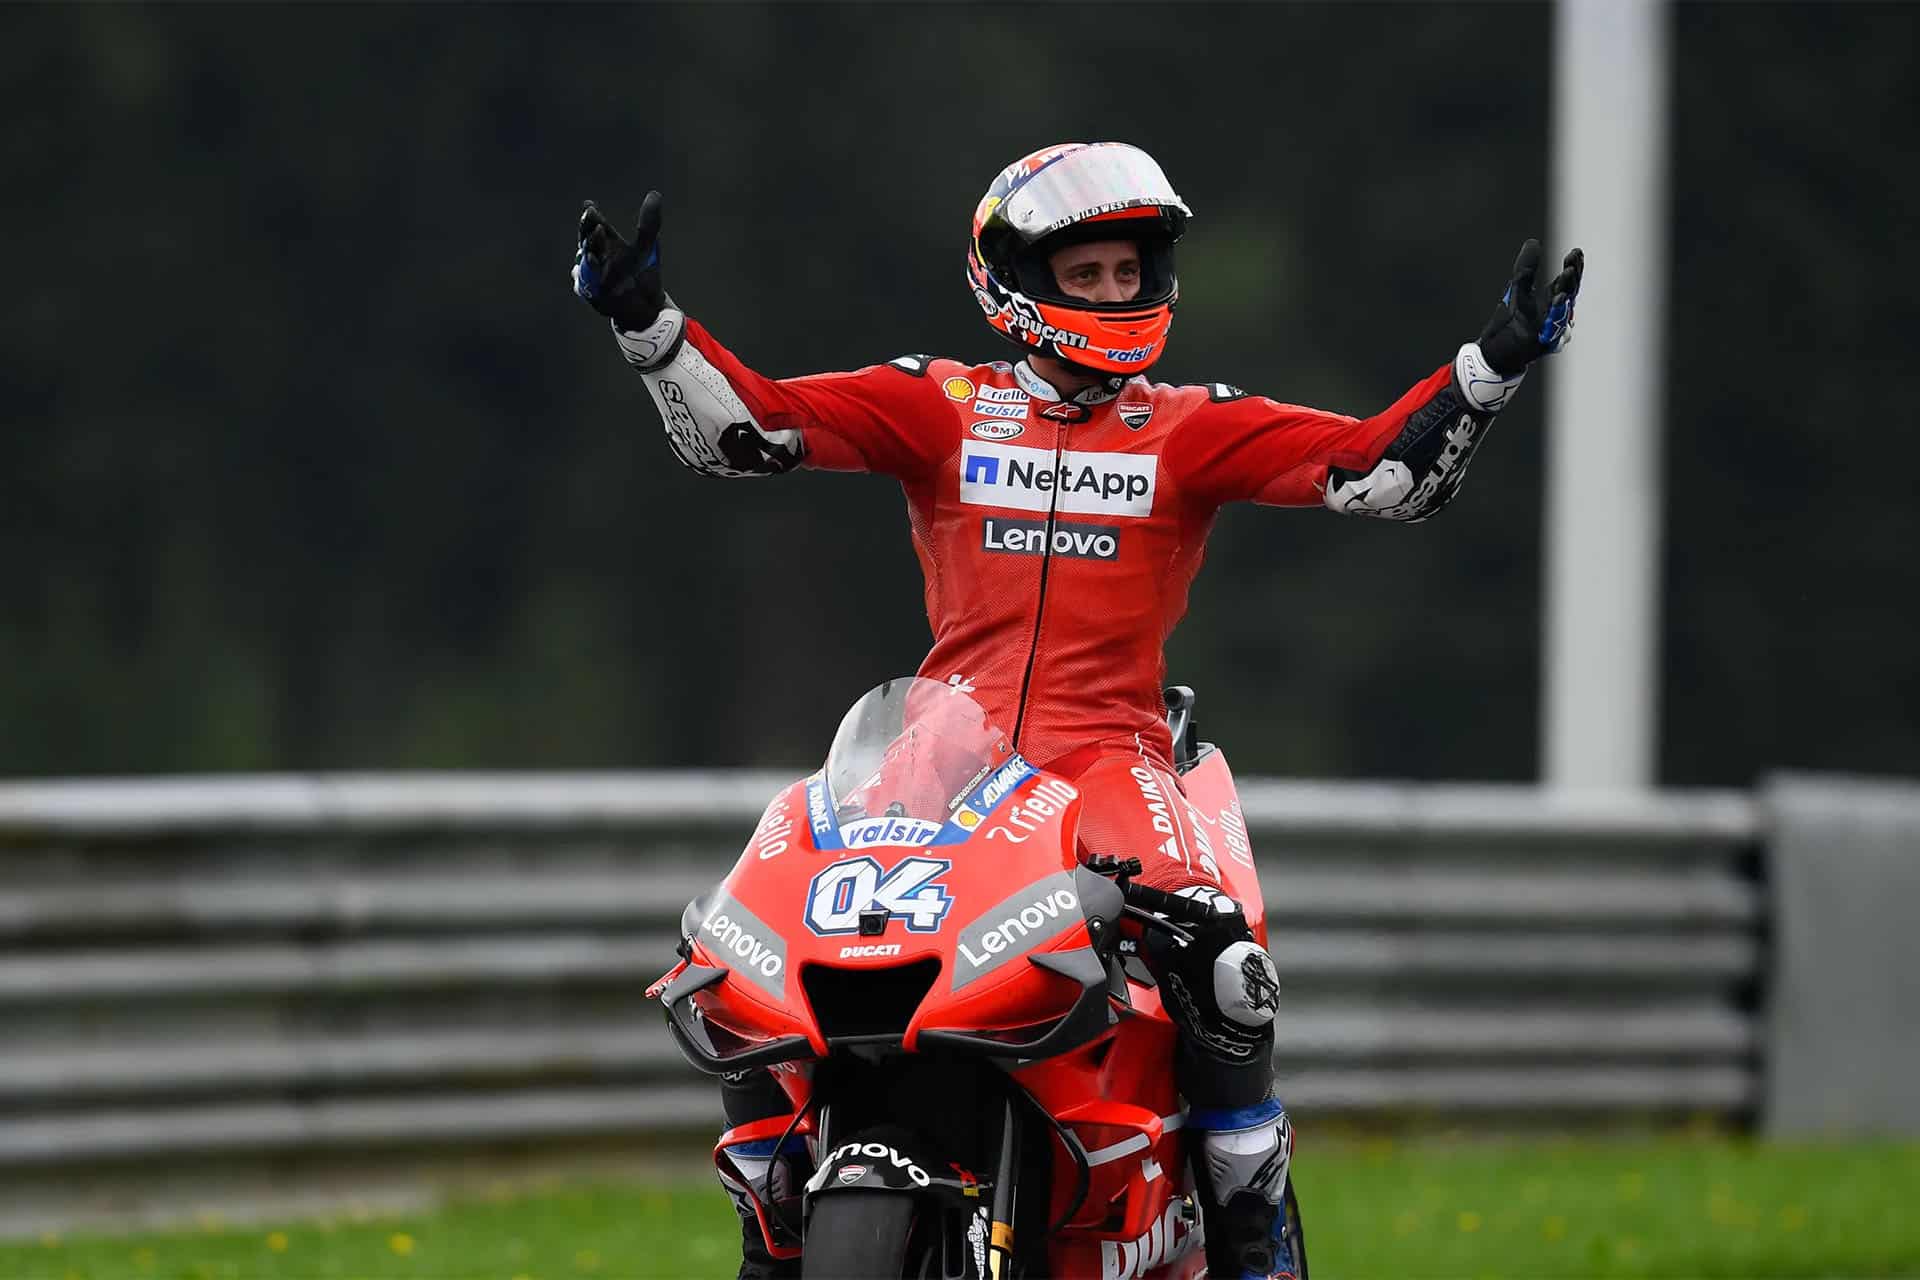 El papel de Dovi en Ducati está fuera de toda duda